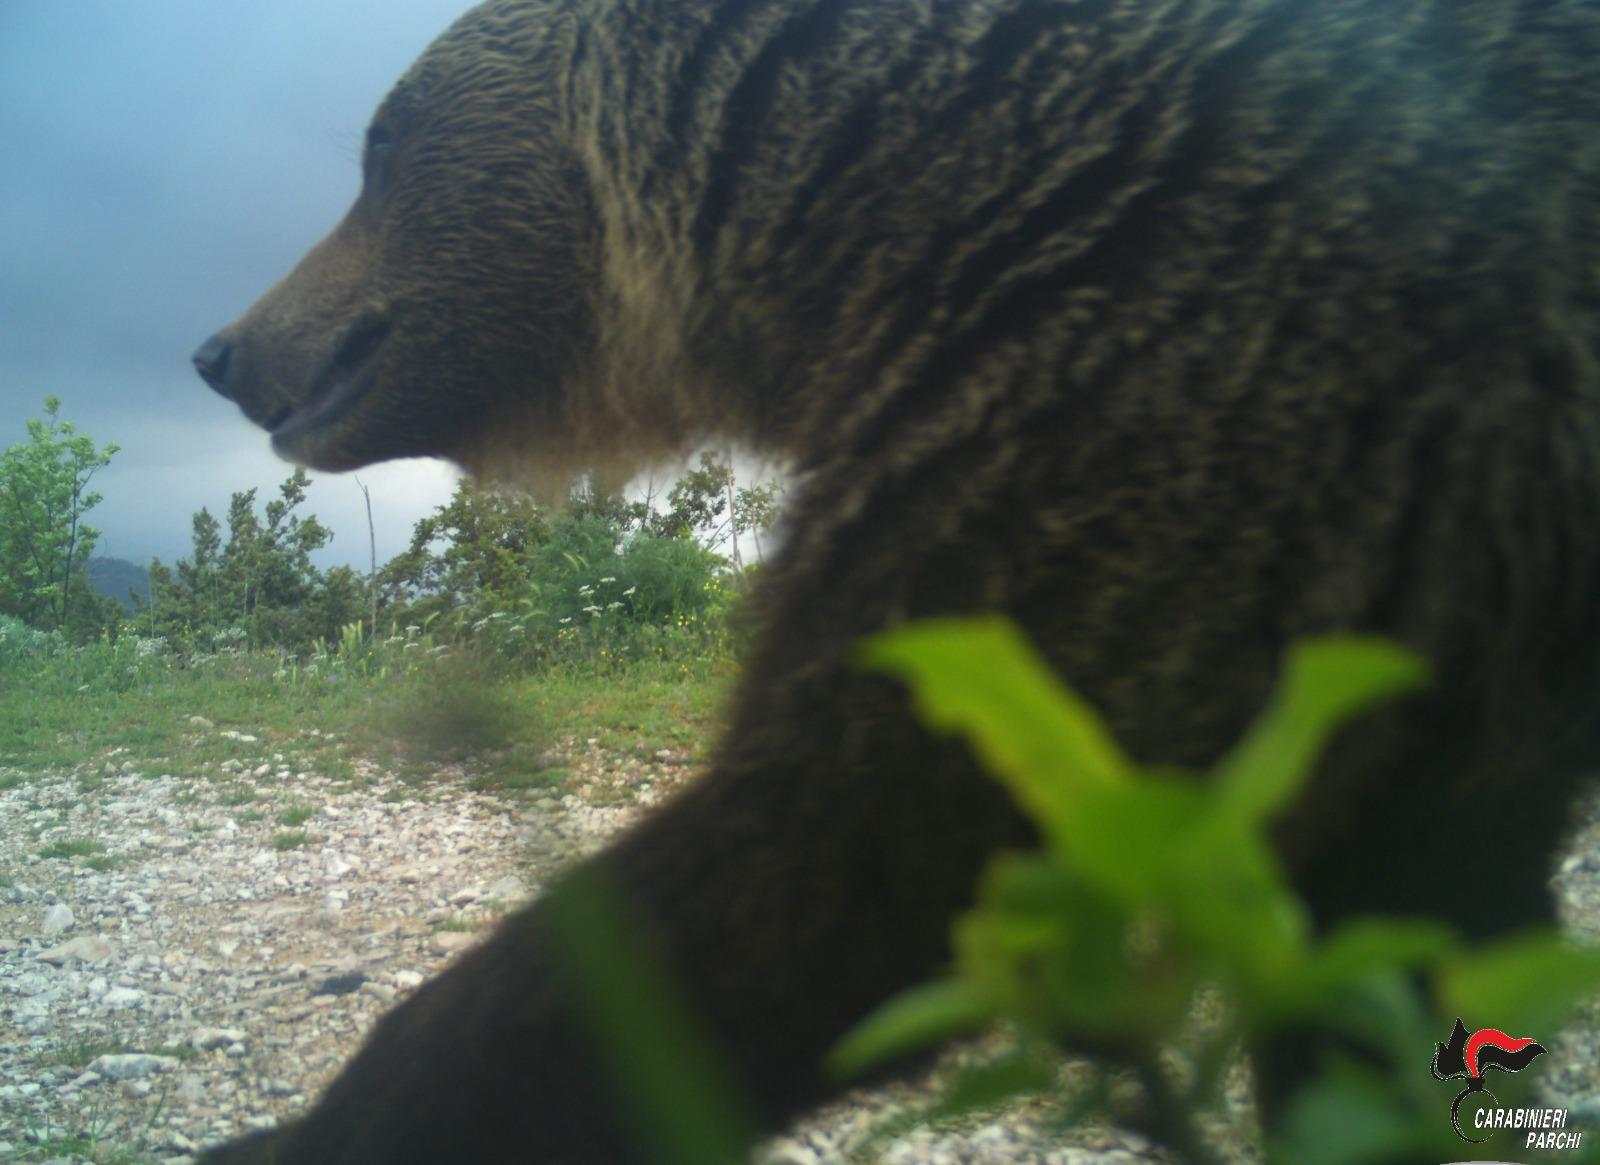 L’orso “Temerario” se la ride nello scatto dei Carabinieri forestali